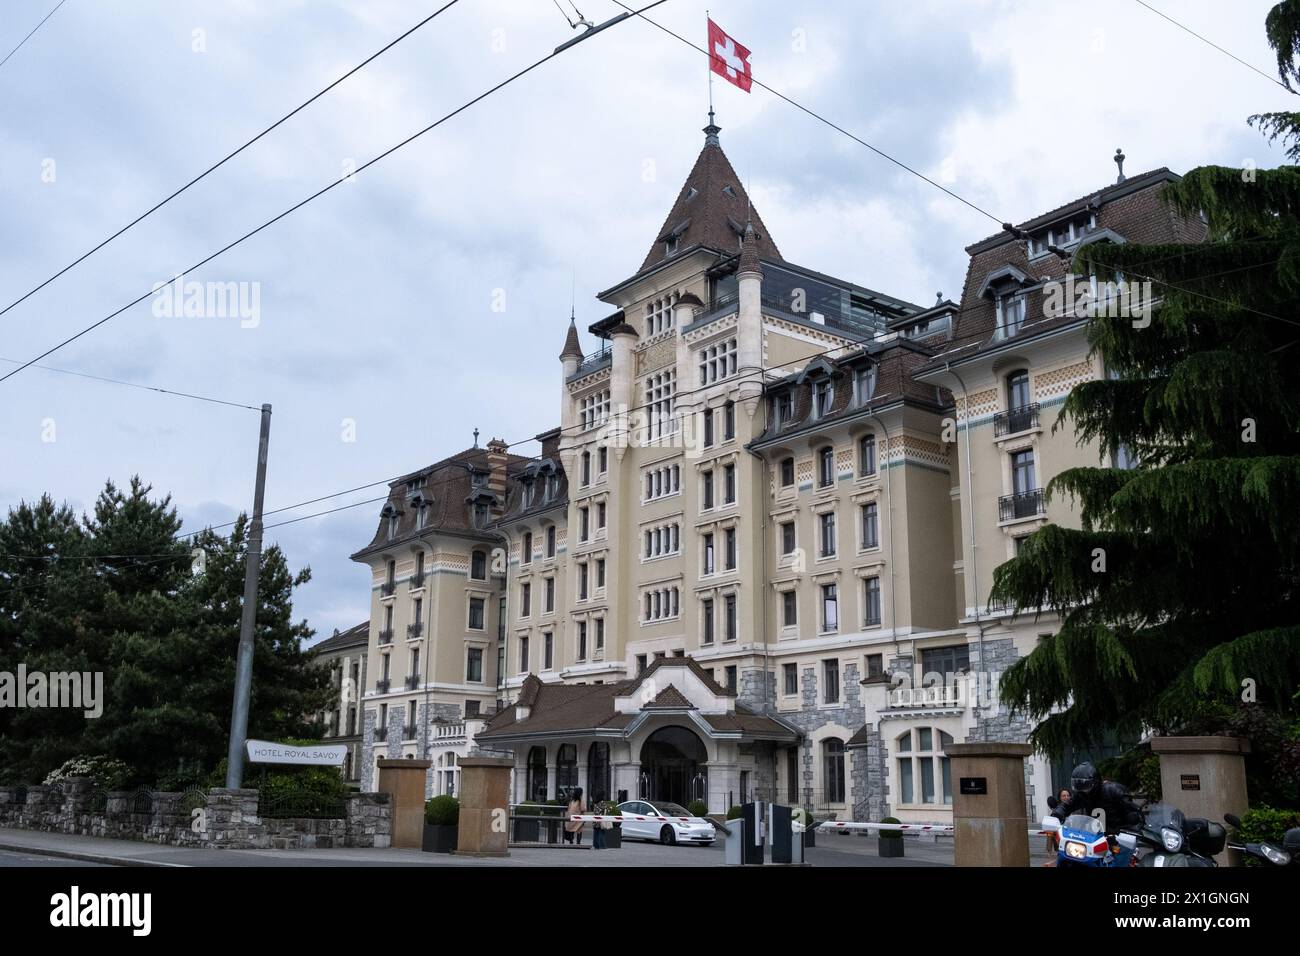 Hotel Royal Savoy Lausanne en Suisse le 19 mai 2023. Lausanne est une ville suisse situee sur la rive nord du lac Leman, capitale du canton de Vaud. Banque D'Images